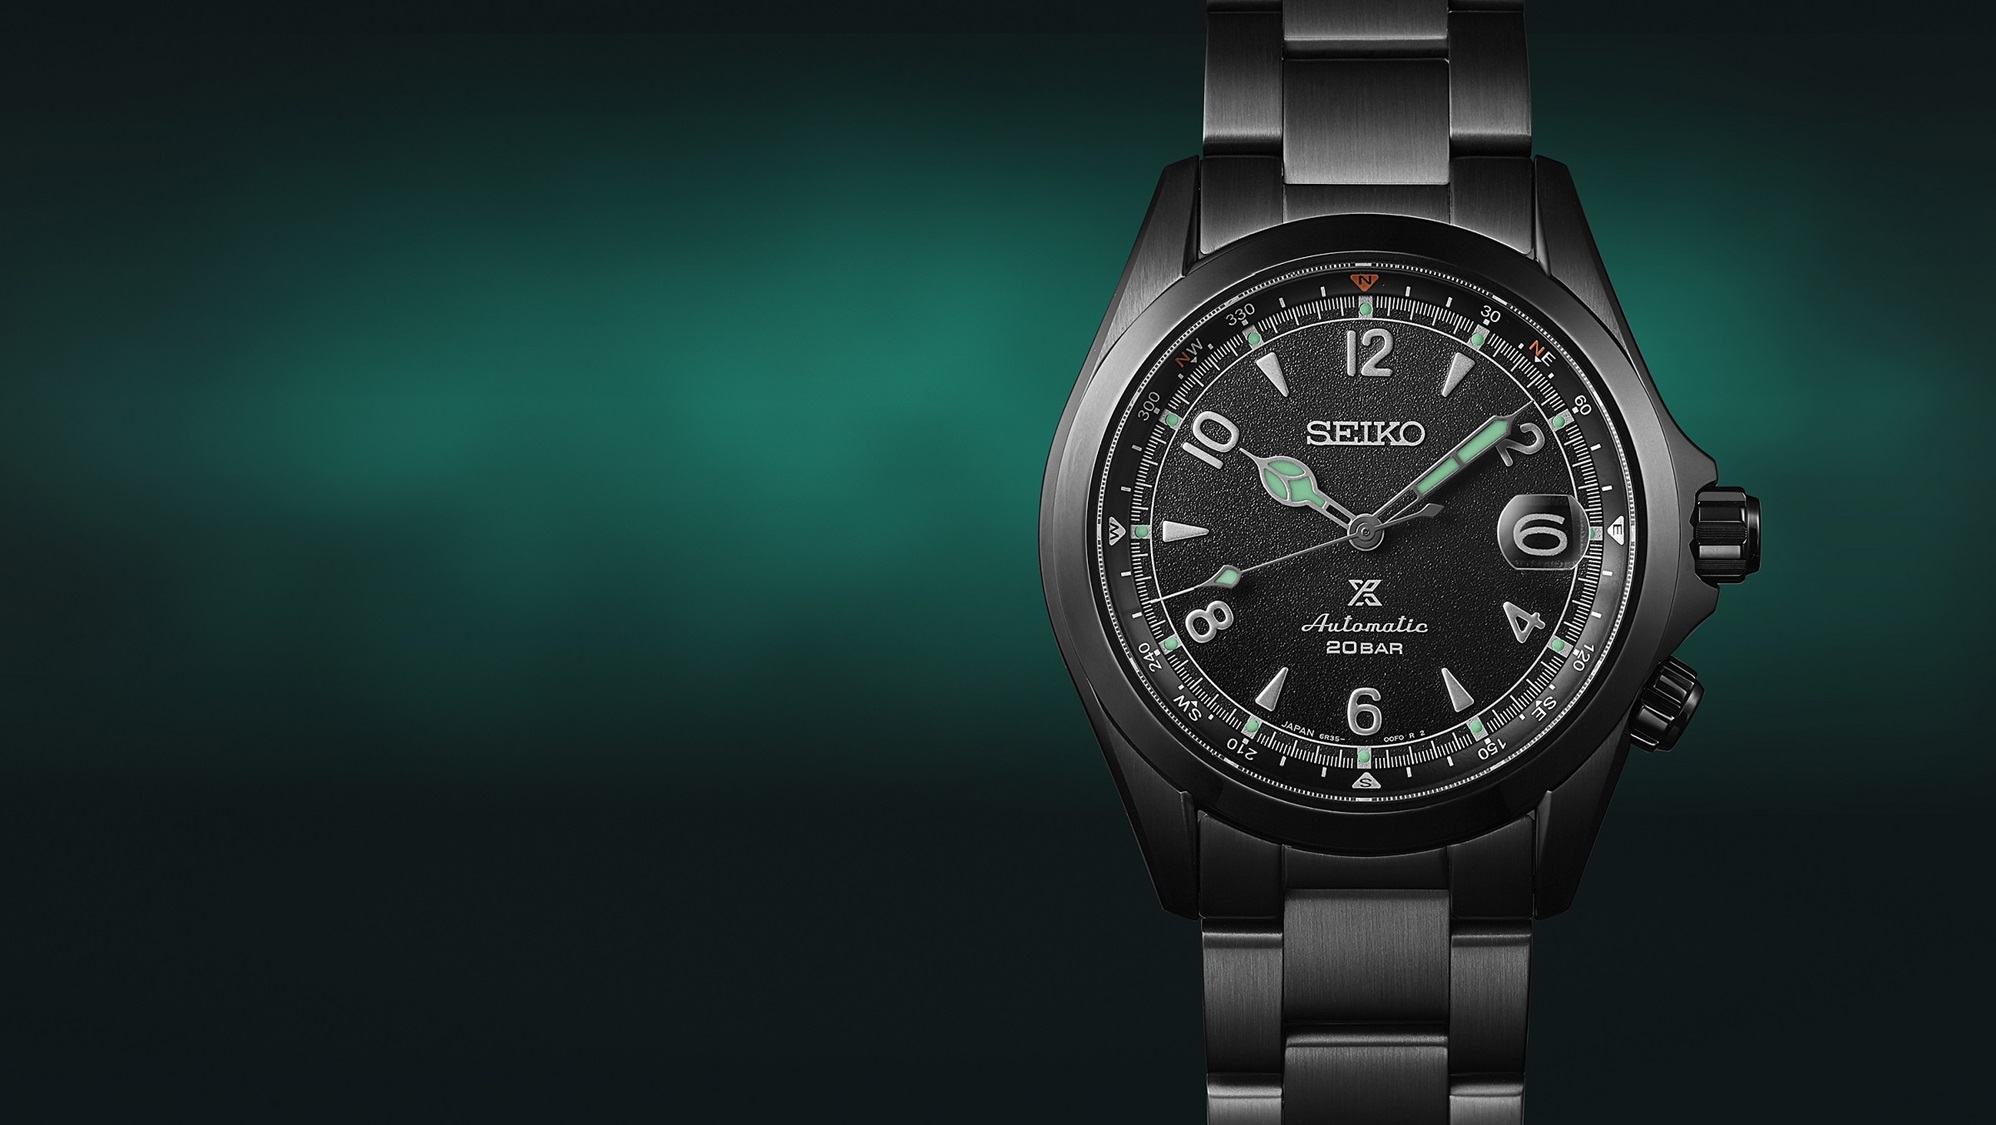 Detalhe do mostrador do relógio mecânico Seiko Prospex Alpinist, edição limitada The Black Series Night Vision, sobre um fundo verde-esmeralda e preto.